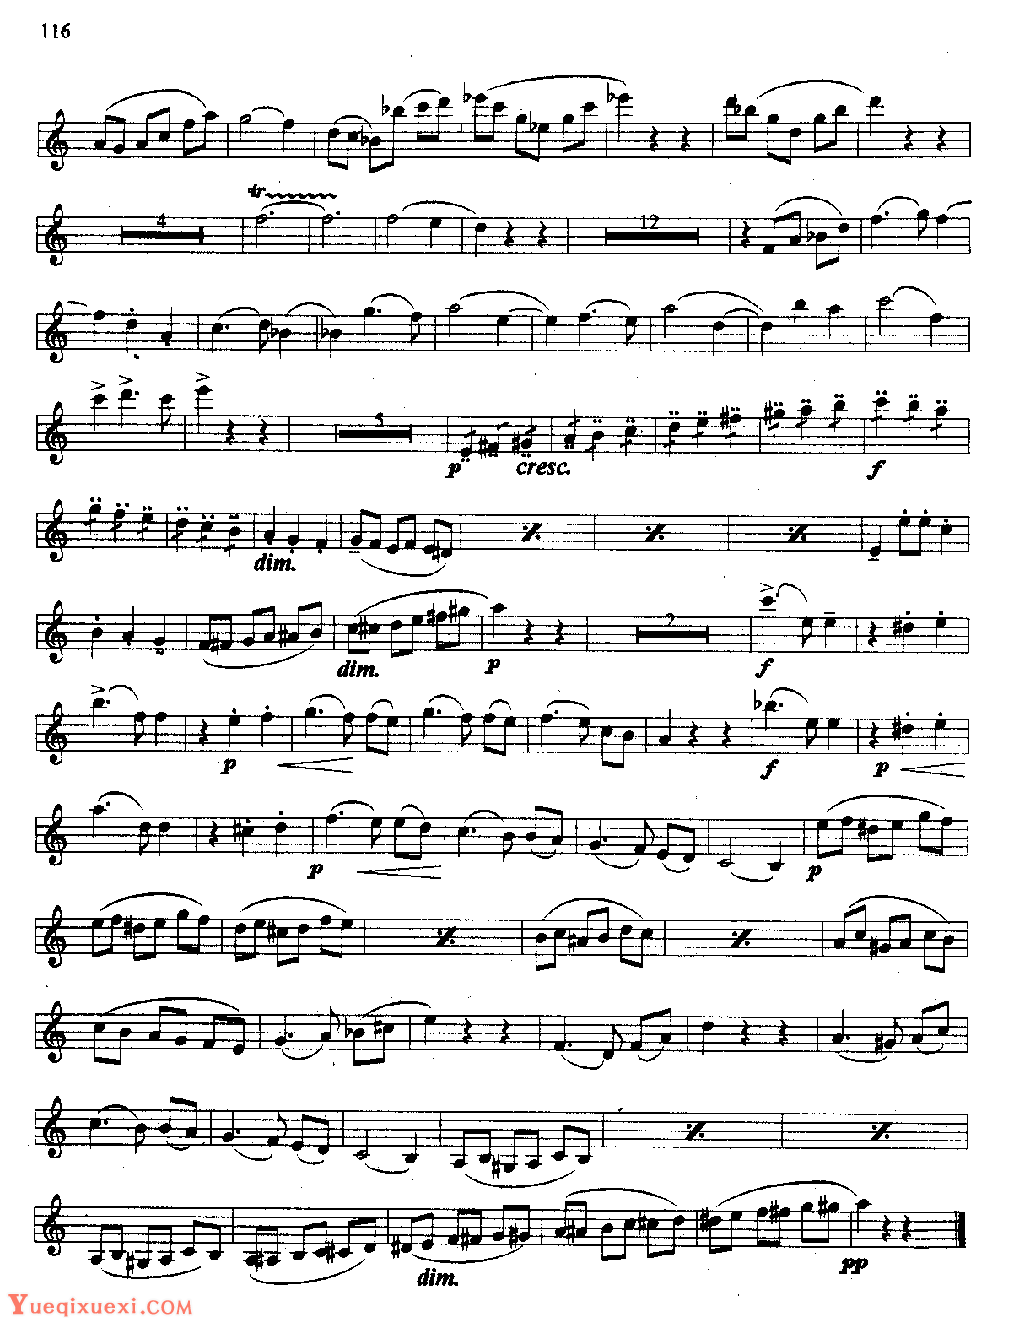 单簧管发音练习《较复杂的节奏、音型技巧等综合性练习曲集中外名曲片断》